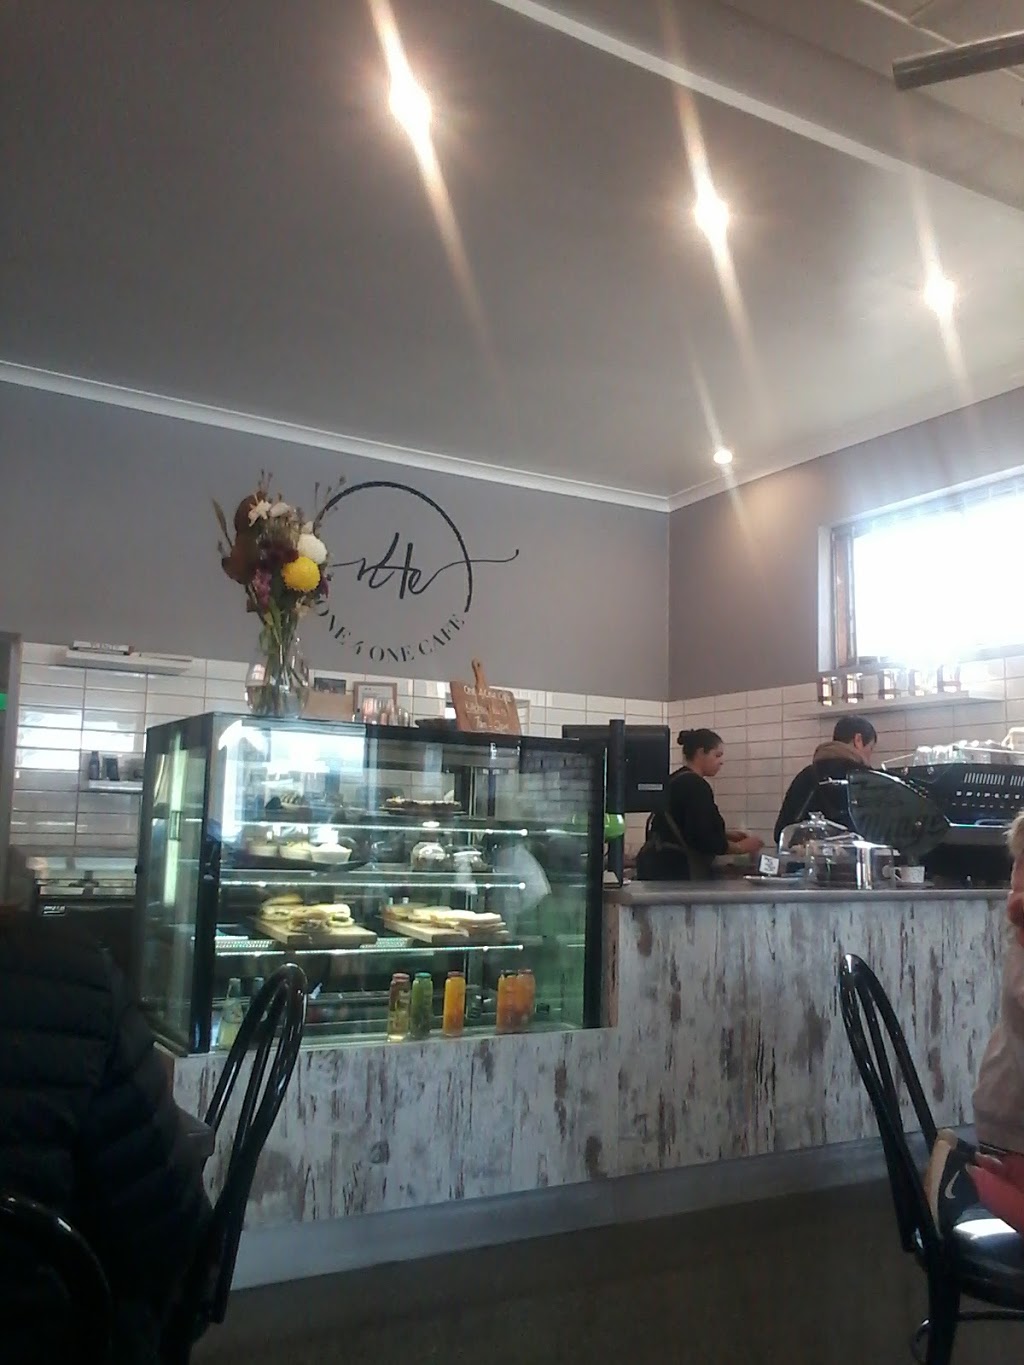 One 4 One Café | cafe | 141 Hogan St, Tatura VIC 3616, Australia | 0436014141 OR +61 436 014 141